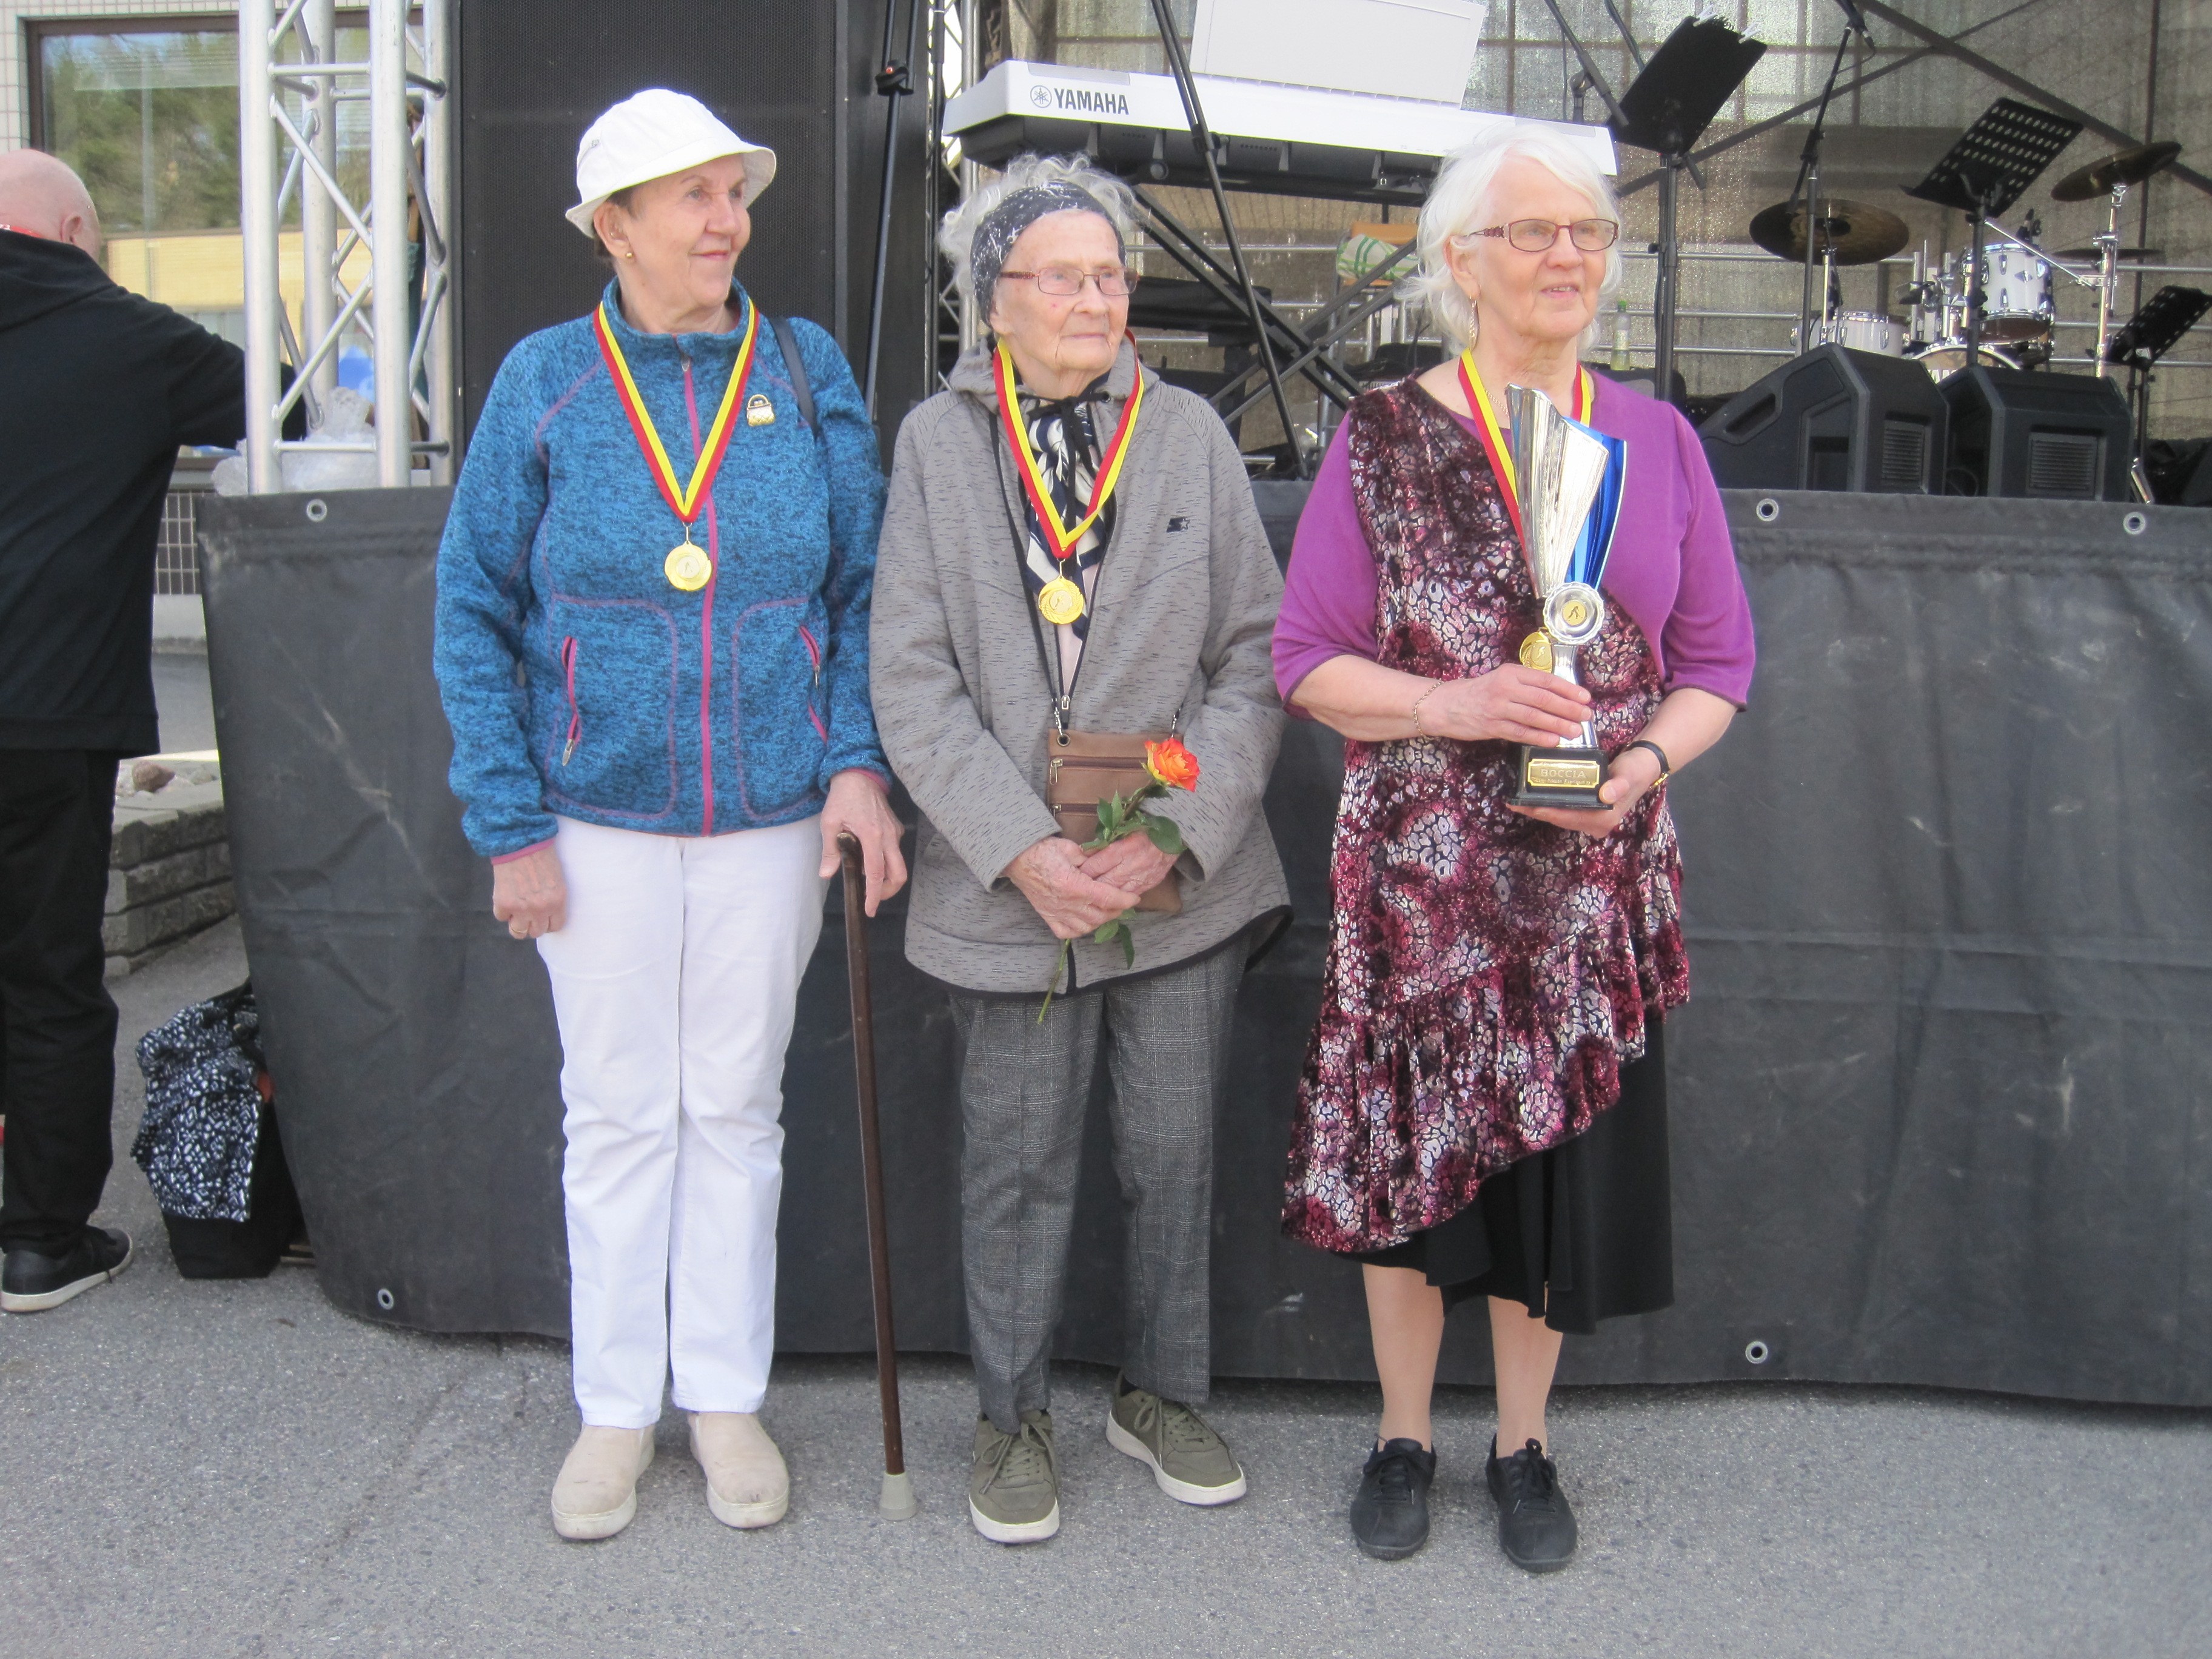 Yhdistyksen naisjoukkue voitti eläkeläisjärjestöjen Piikkiö Päivän kisan. Kuvassa Ulla Aunio, Raila Hakala ja Marjatta Turakainen.